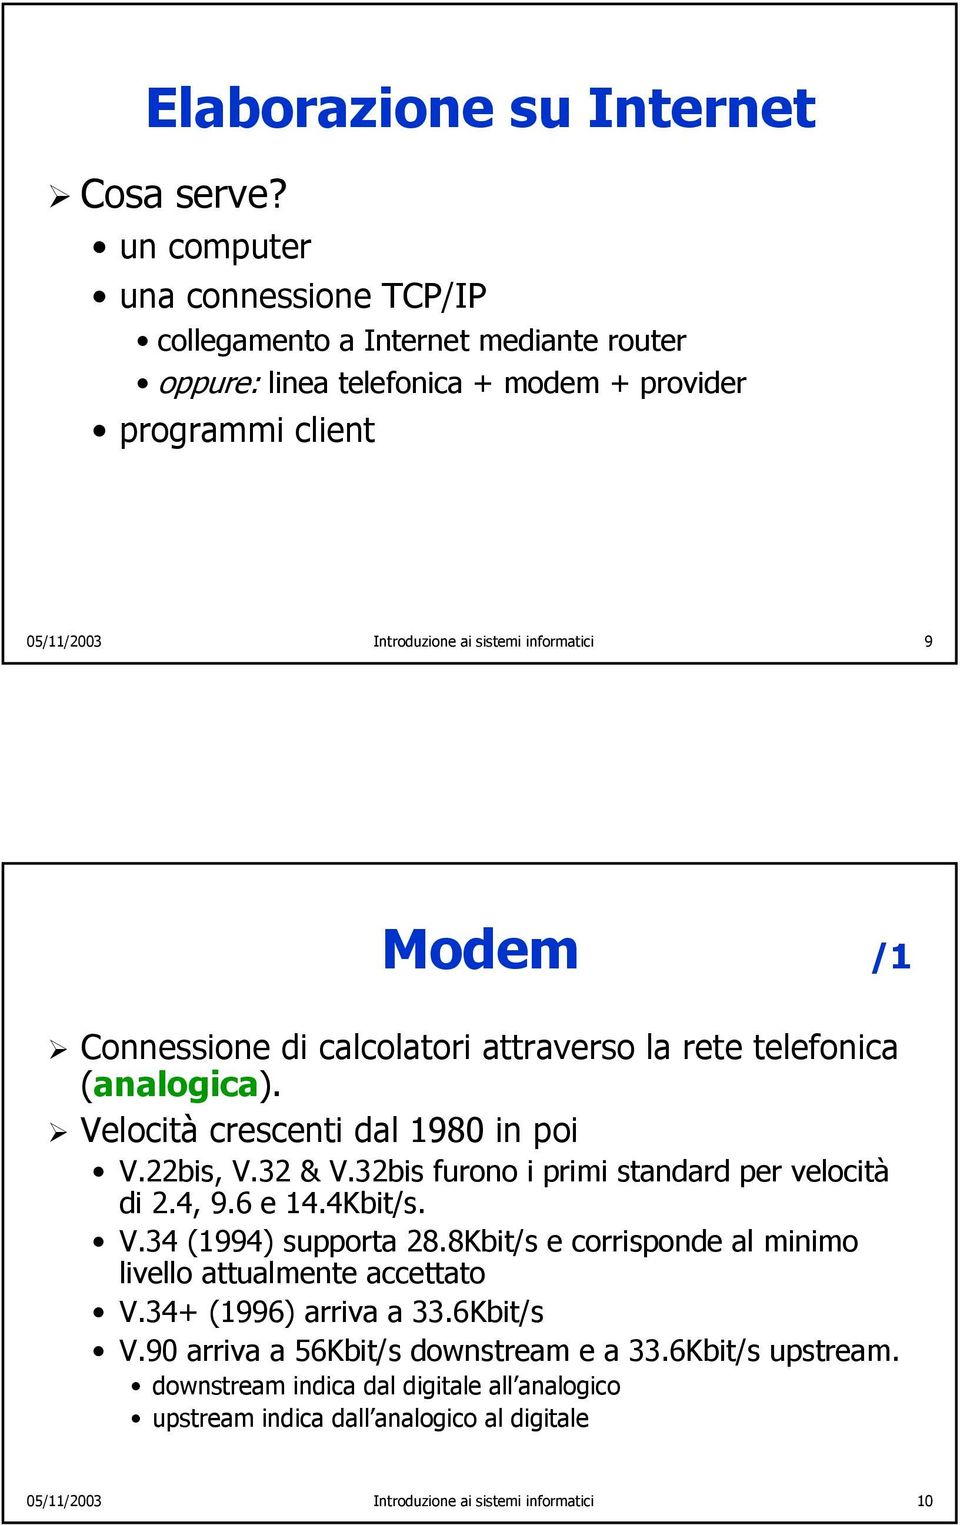 Modem /1 Connessione di calcolatori attraverso la rete telefonica (analogica). Velocità crescenti dal 1980 in poi V.22bis, V.32 & V.32bis furono i primi standard per velocità di 2.4, 9.